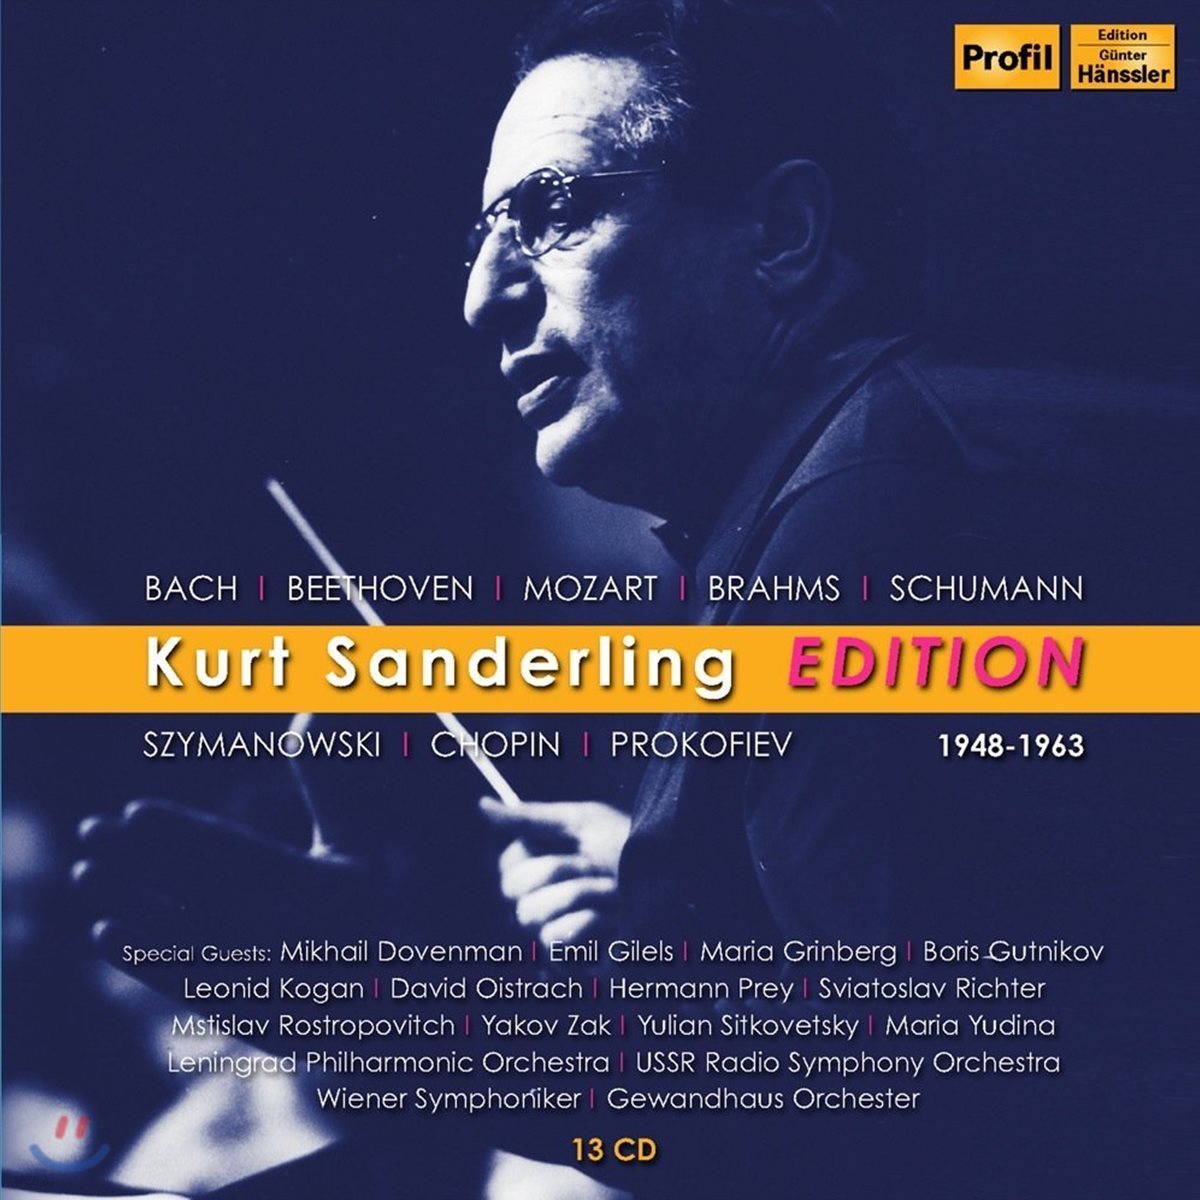 쿠르트 잔더를링 - 협주곡 에디션: 바흐 / 베토벤 / 모차르트 / 브람스 / 슈만 (Kurt Sanderling Edition - Concertos)